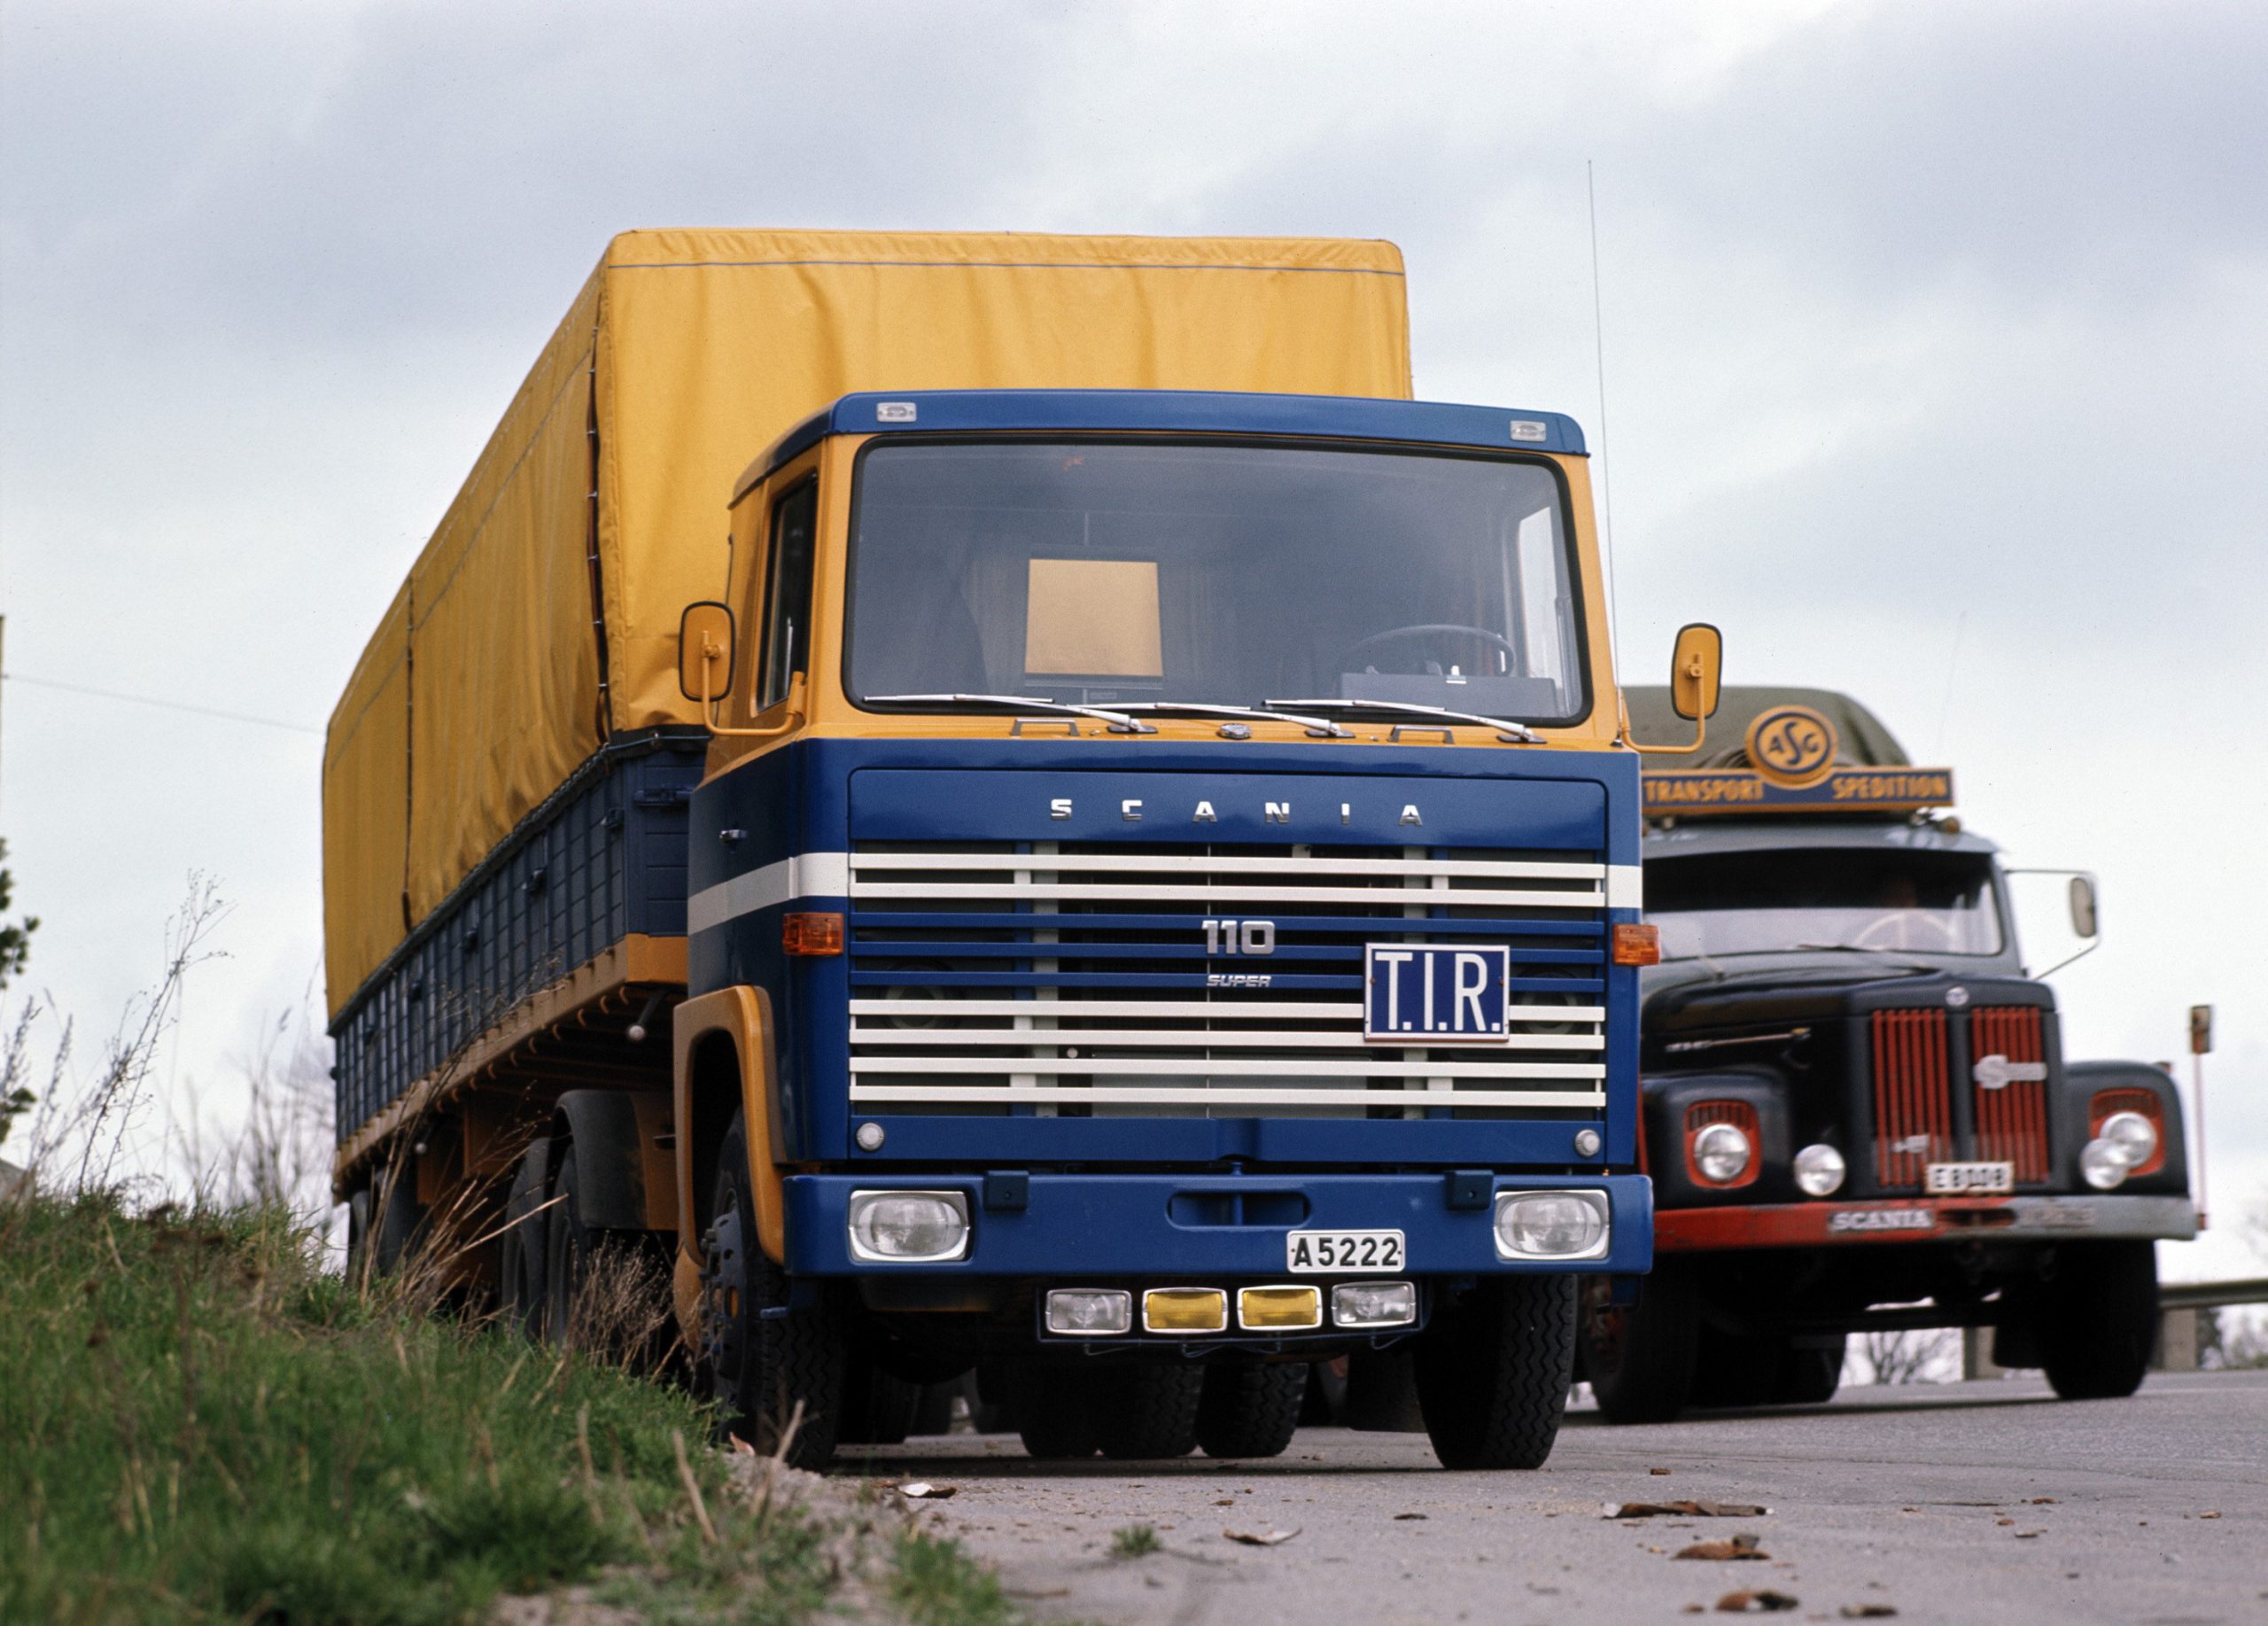 Scania Super è un binomio che ha scritto la storia dei veicoli industriali